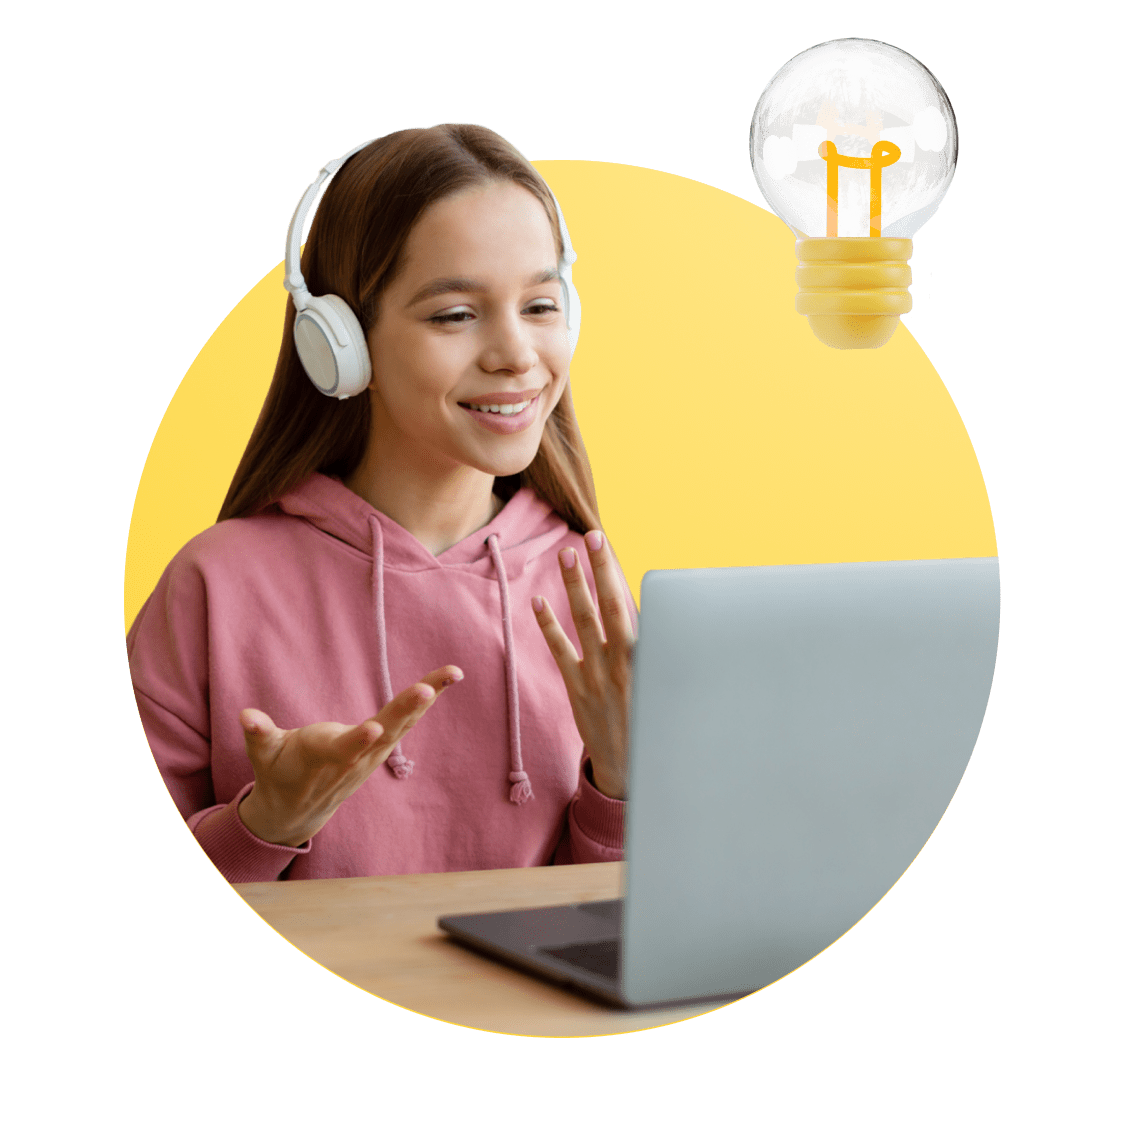 Texas Online Schools image 7 (name 4 Young Girl Desk Headphones Light)